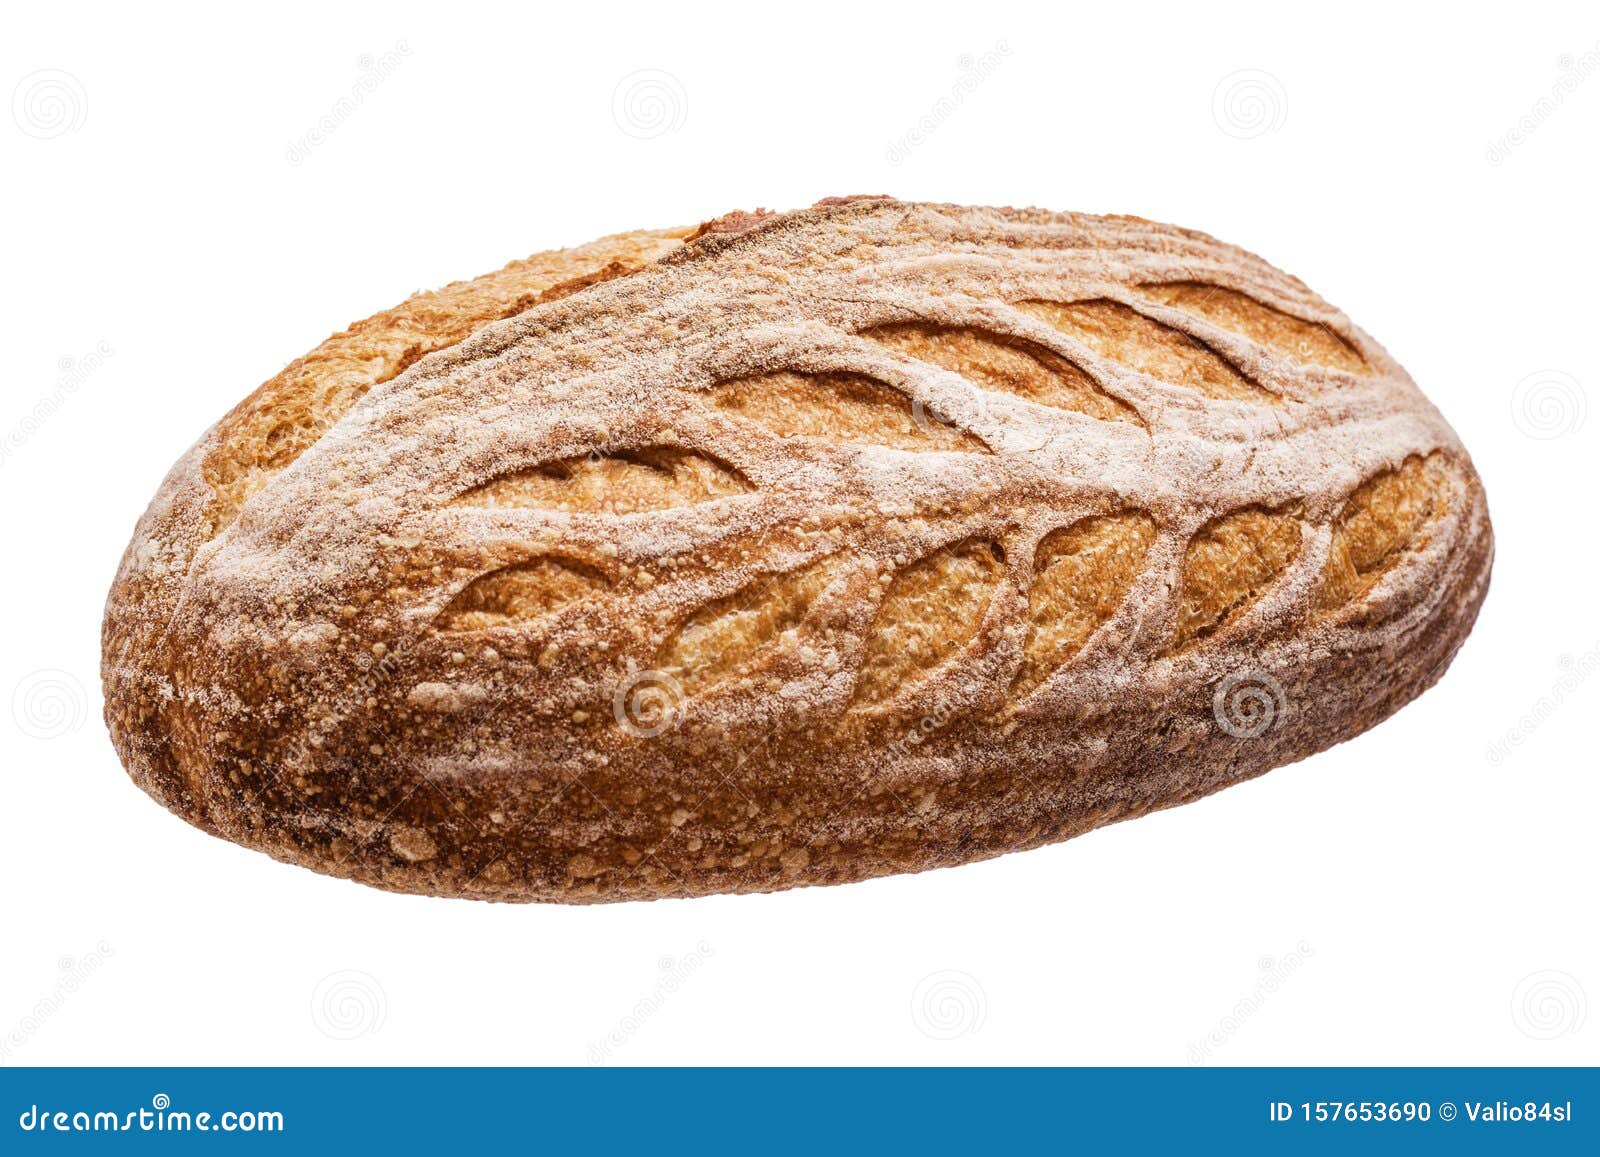 sourdough freshly baked bread on white background